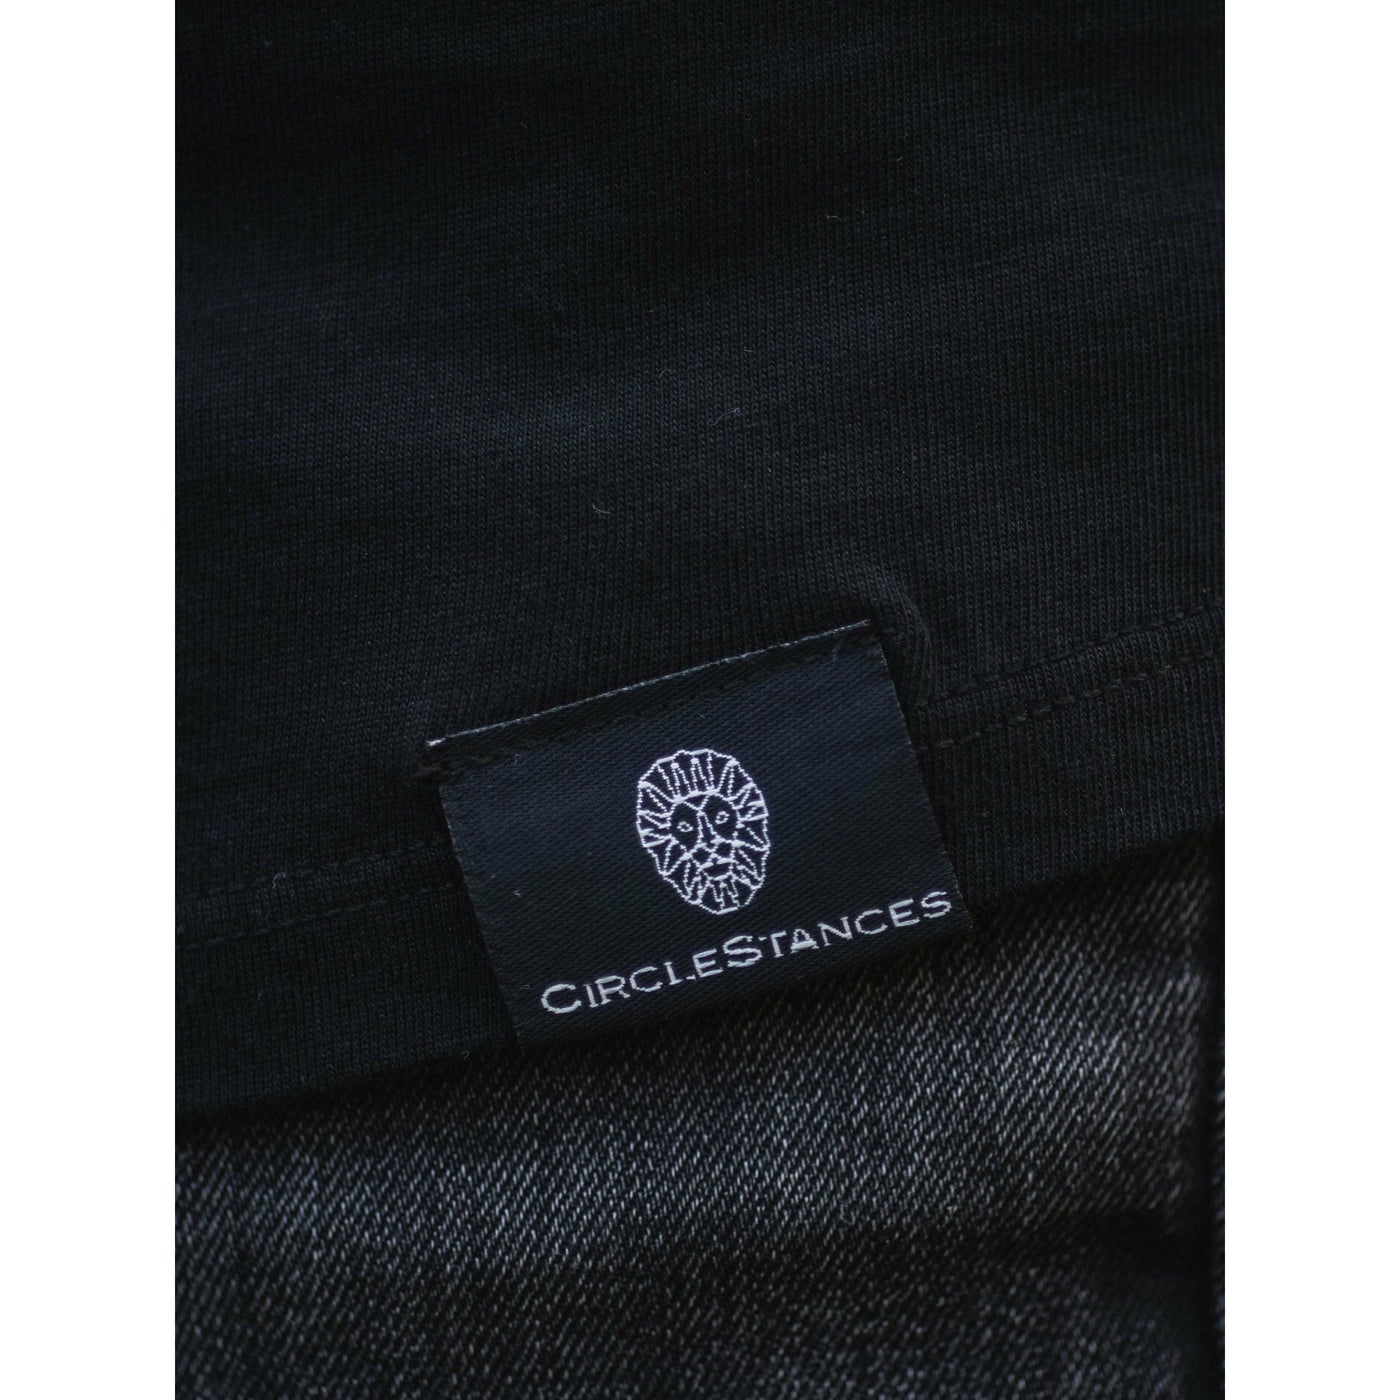 #Drops4Future Shirt Black